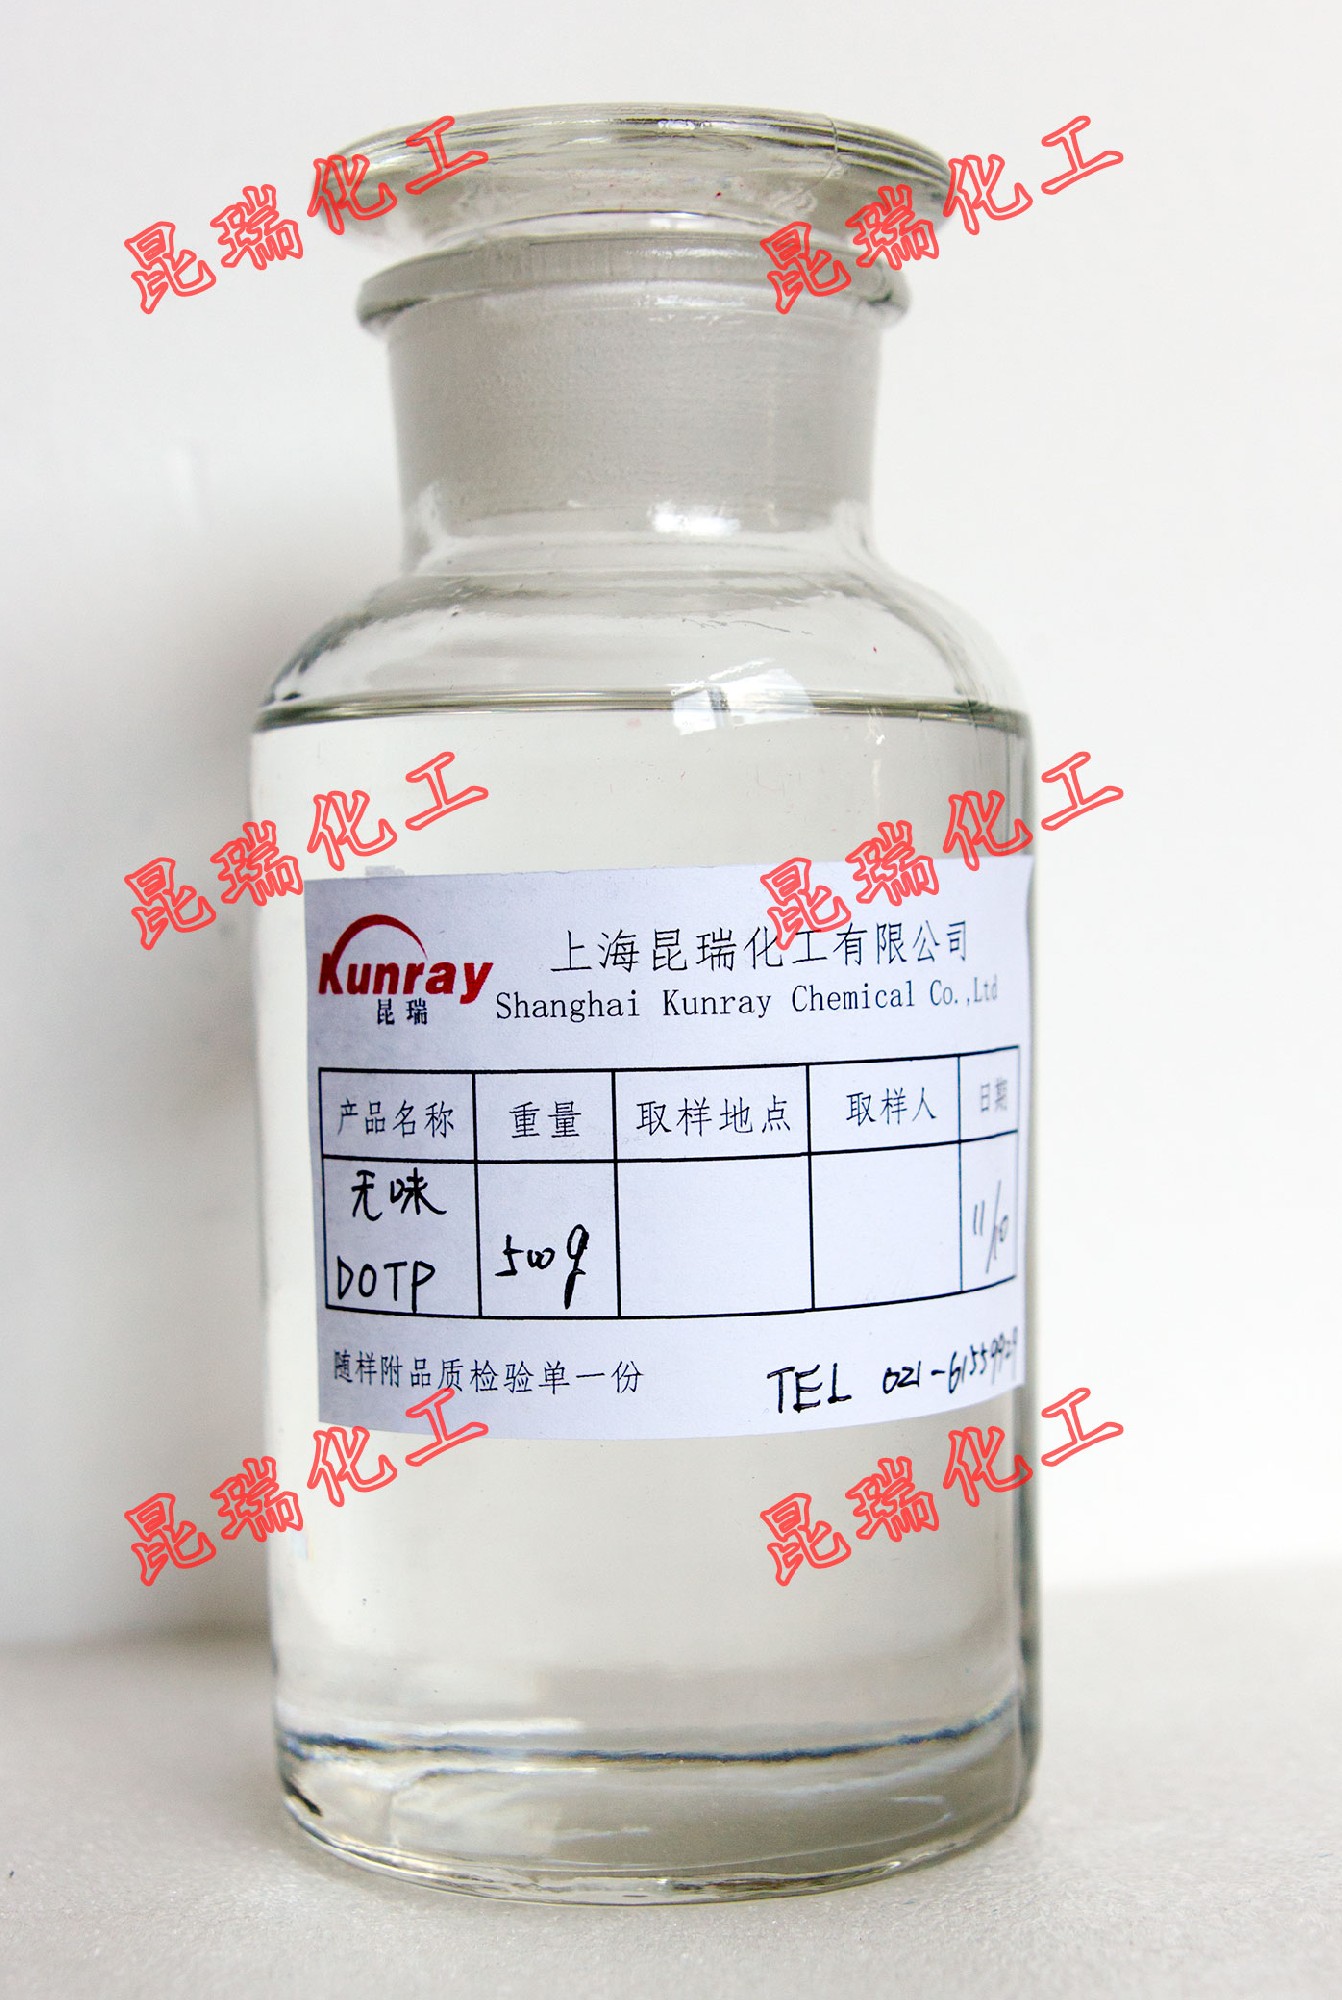 DOTP（低气味） 对苯二甲酸二辛酯